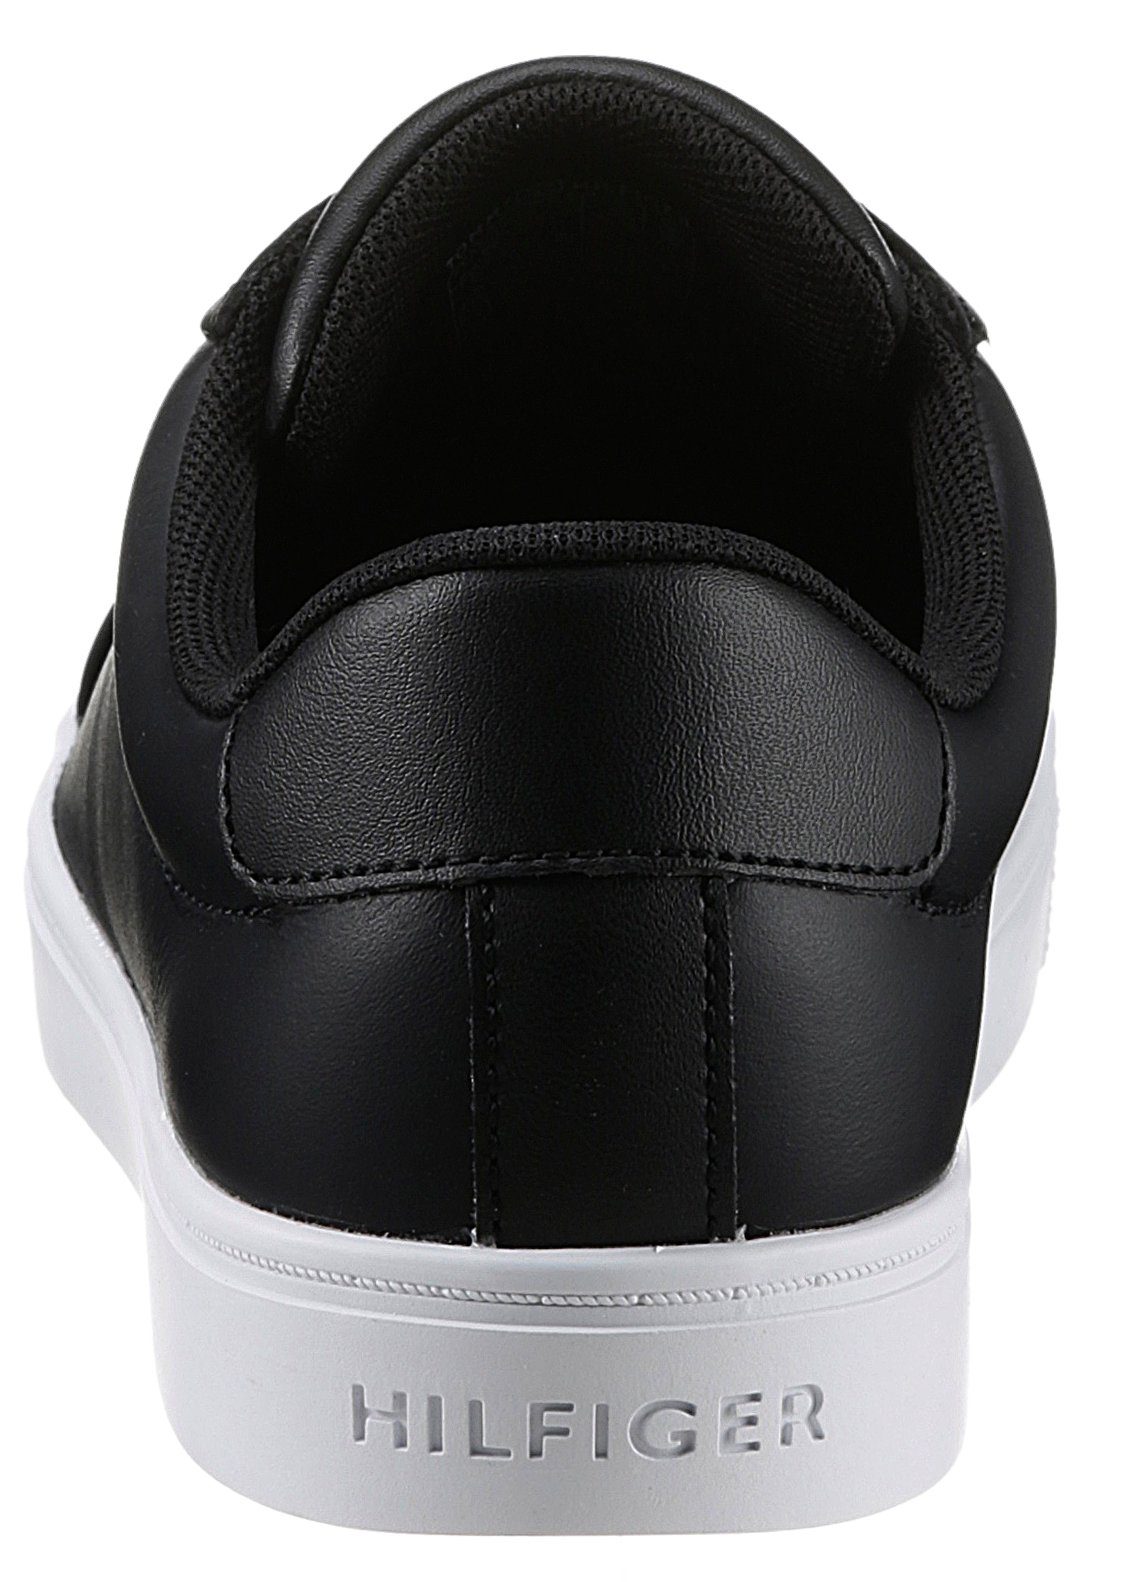 Tommy Hilfiger ELASTIC Gummizug schwarz breitem Slip-On SNEAKER Sneaker mit SLIP ON